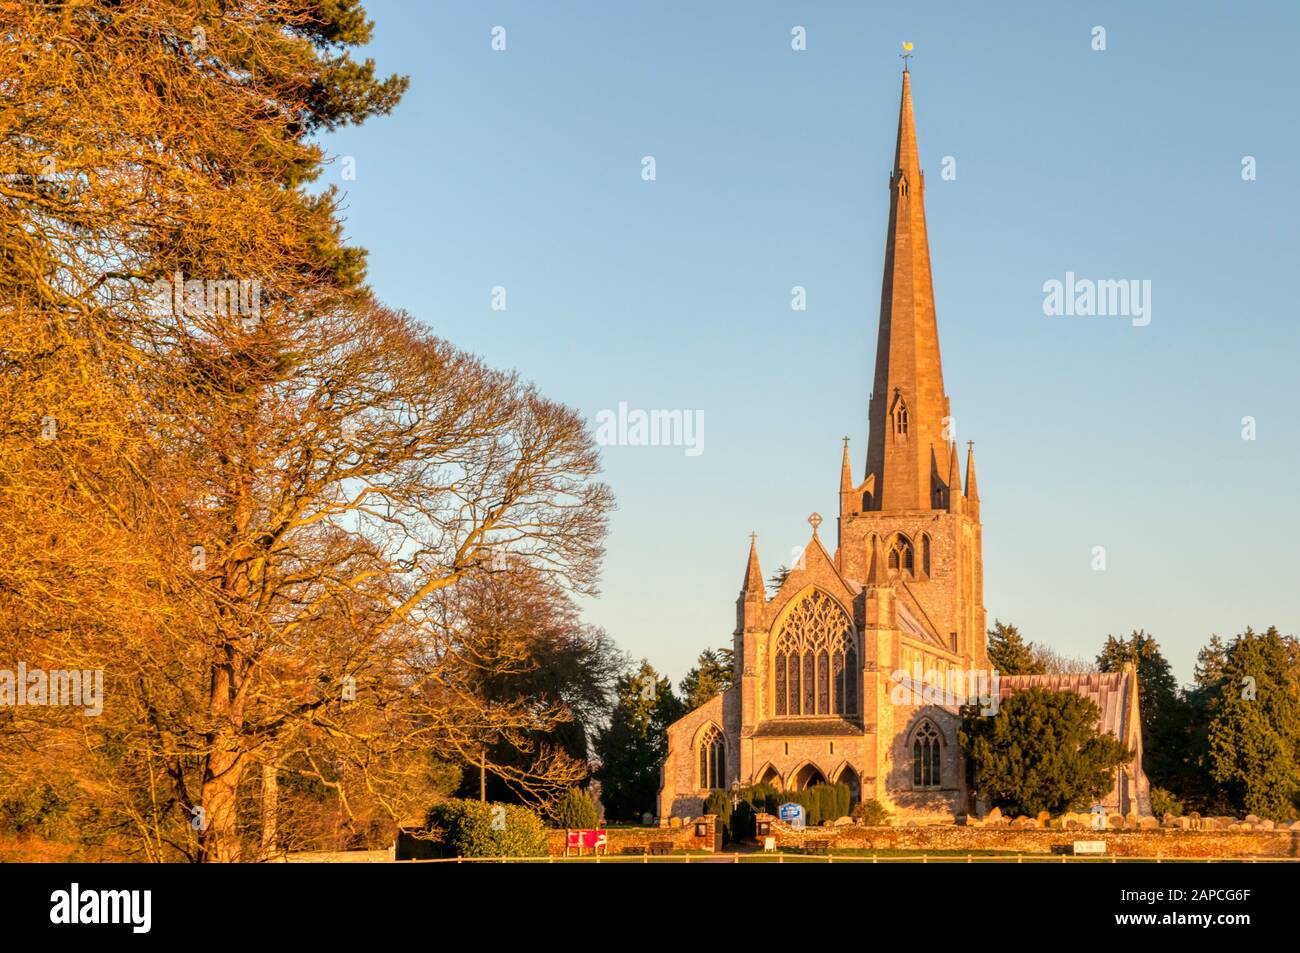 La lumière du soleil du soir saisit le devant ouest de l'église St Mary's à Snettisham. Pevsner l'a appelée "peut-être l'église La Plus excitante Décorée de Norfolk". Banque D'Images